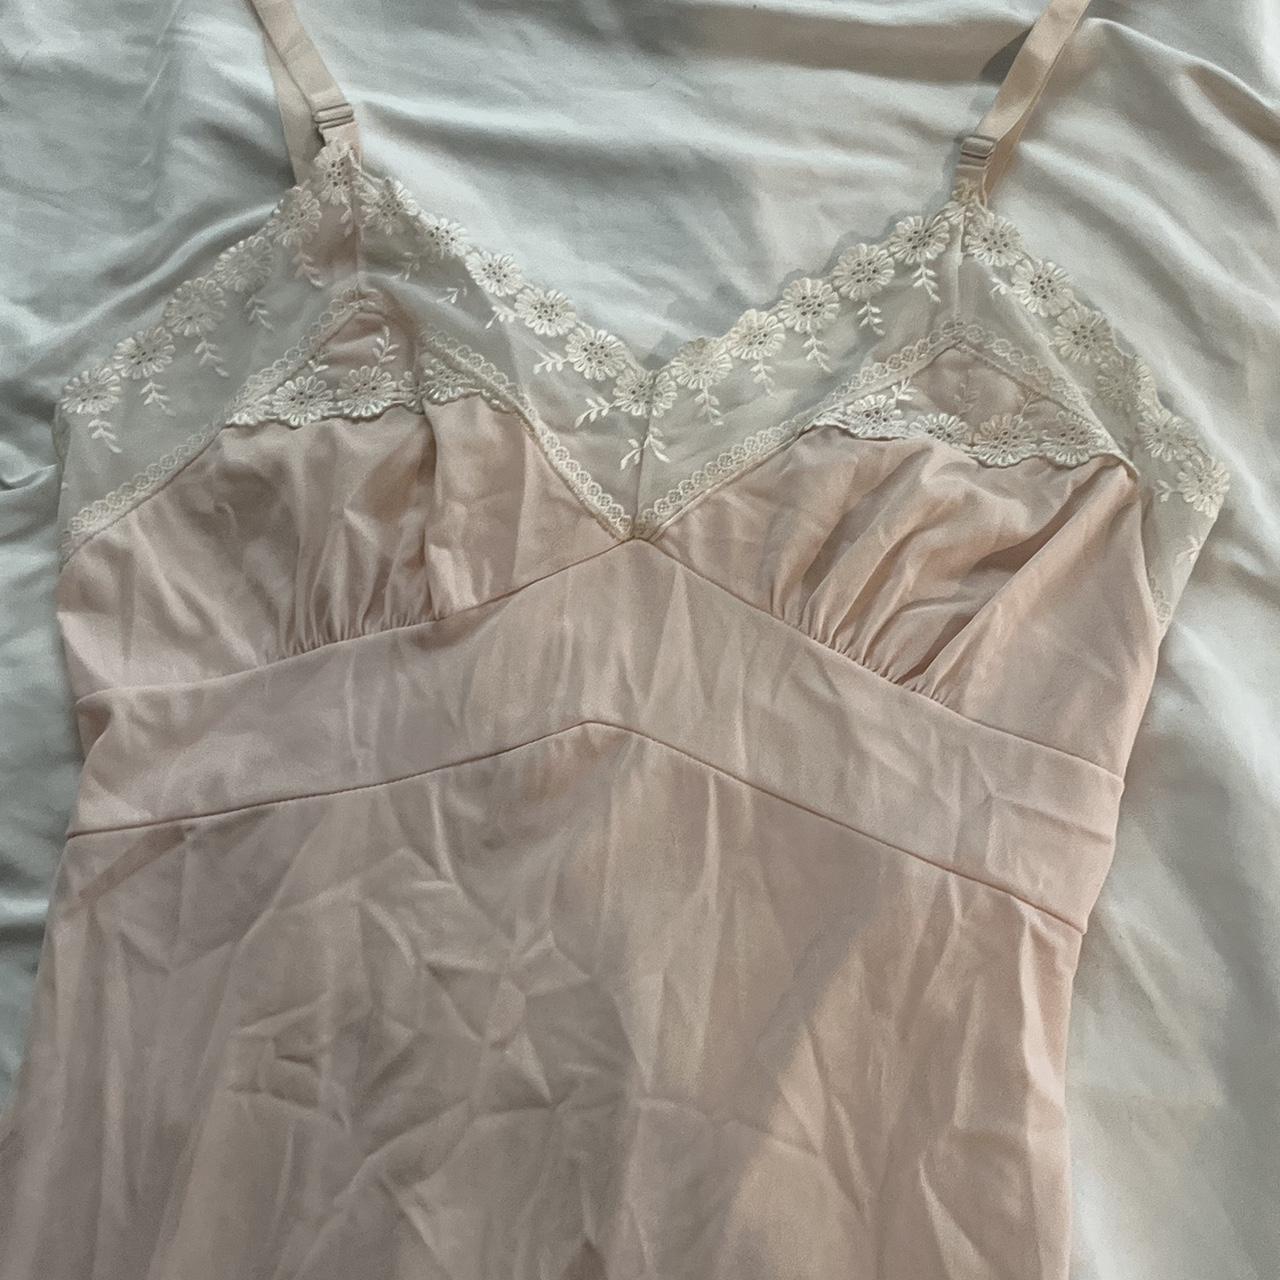 pink coquette gown 🎀🎀 worn adjustable straps - Depop